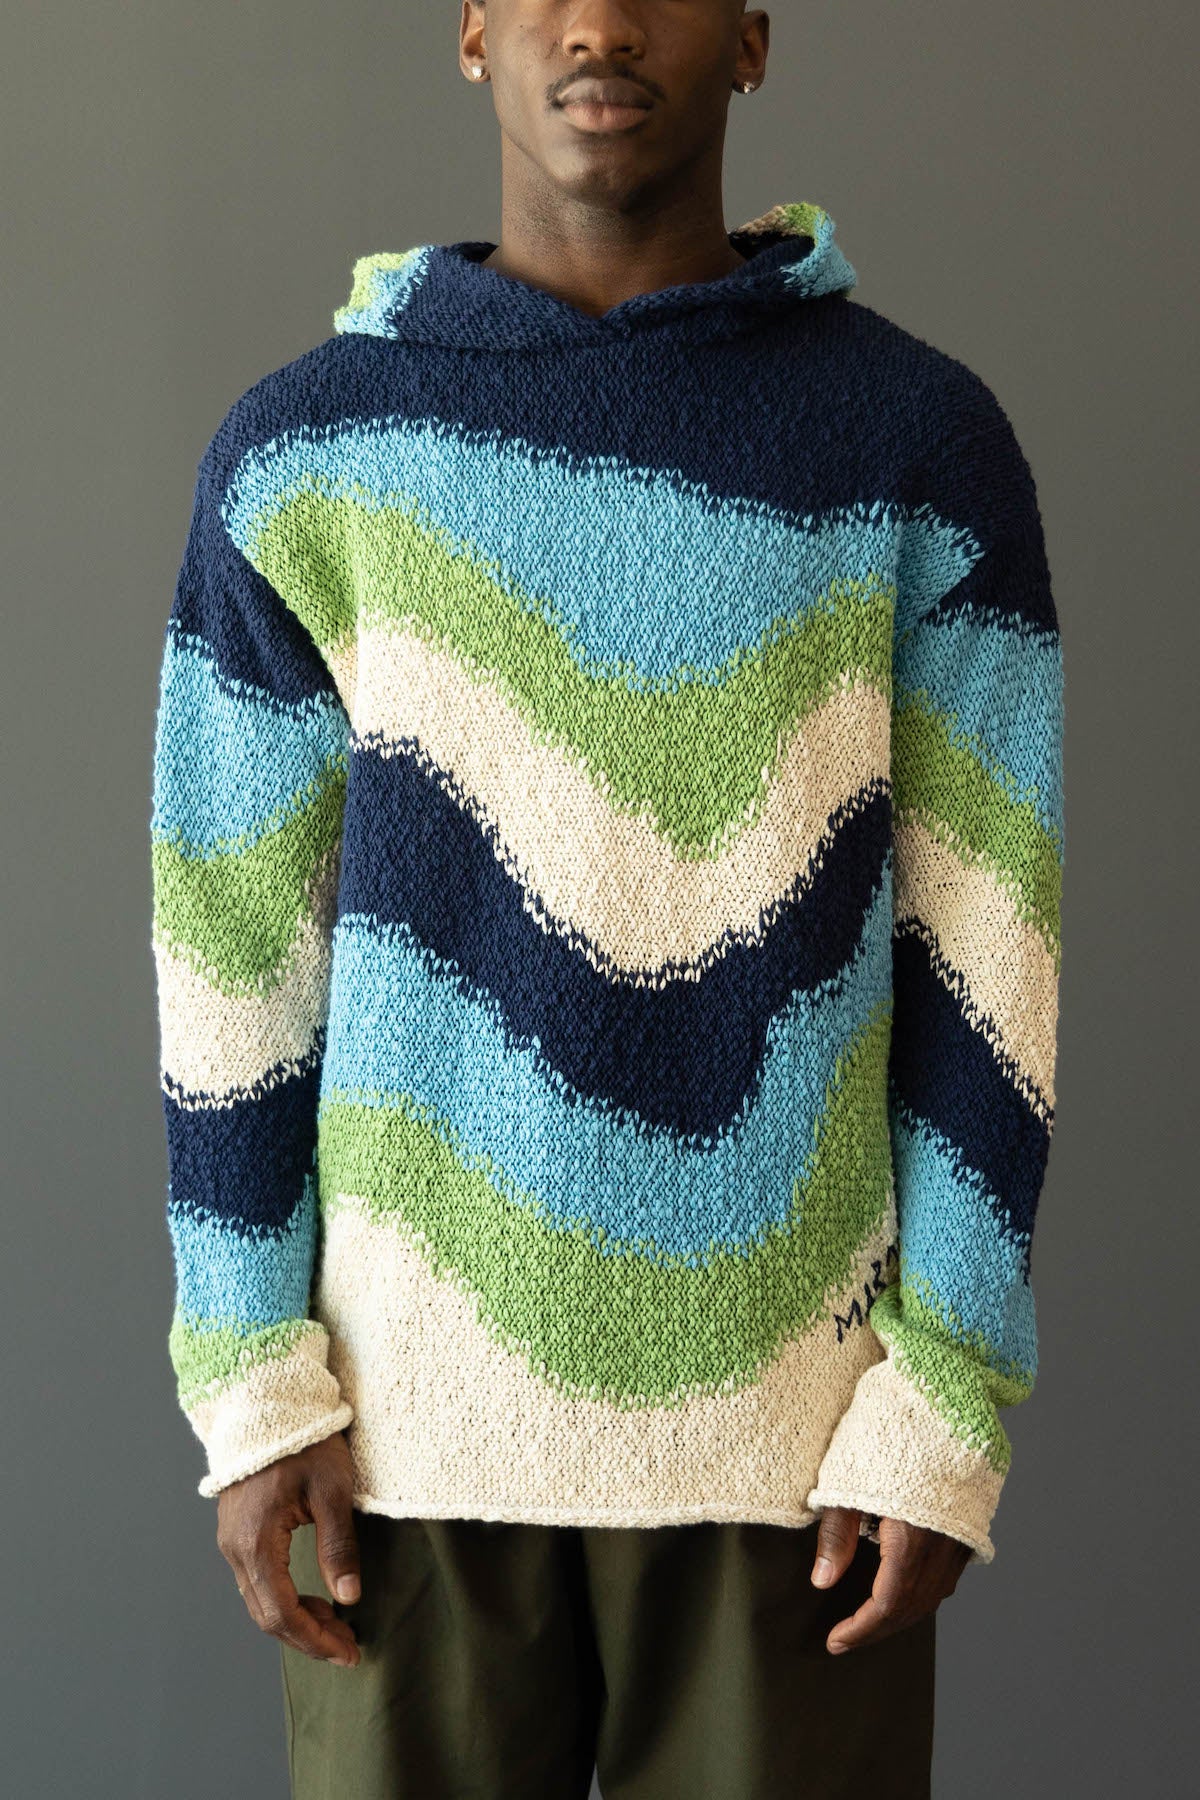 MARNI Tiger Intarsia Sweater